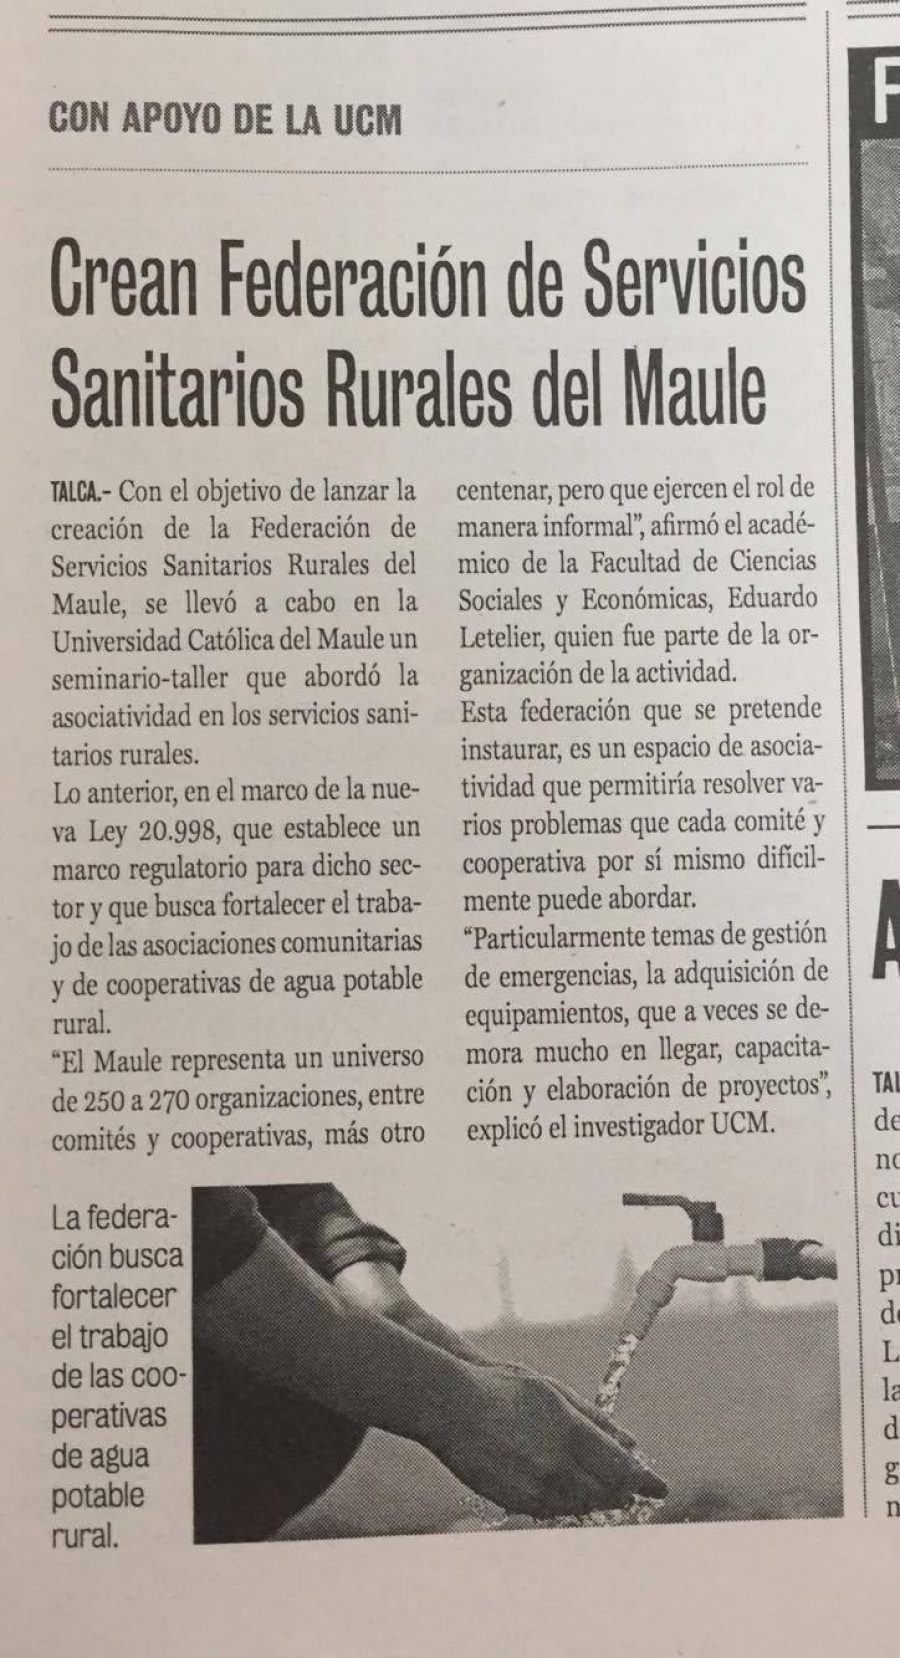 03 de noviembre en Diario La Prensa: “Crean Federación de Servicios Sanitarios Rurales del Maule”